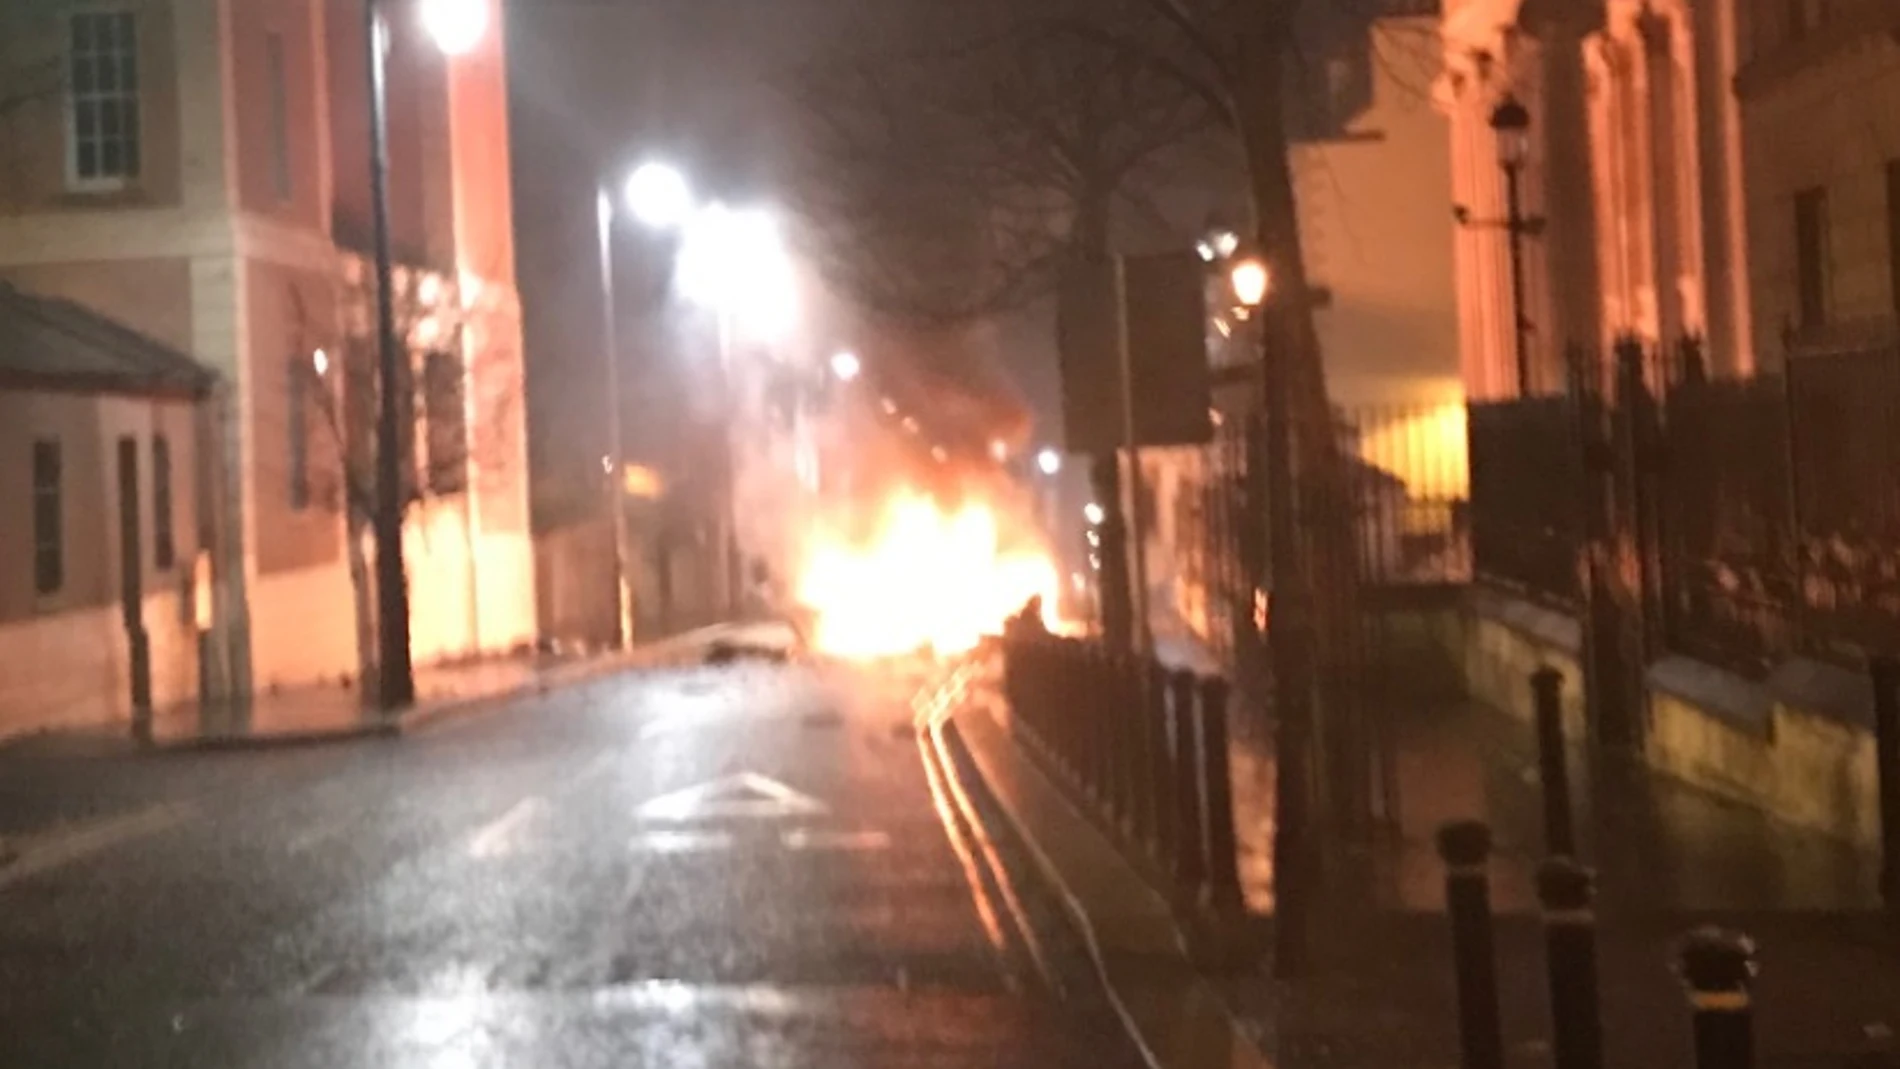 Imagenes de las llamas provocadas por la explosión de un coche bomba en Irlanda del Norte